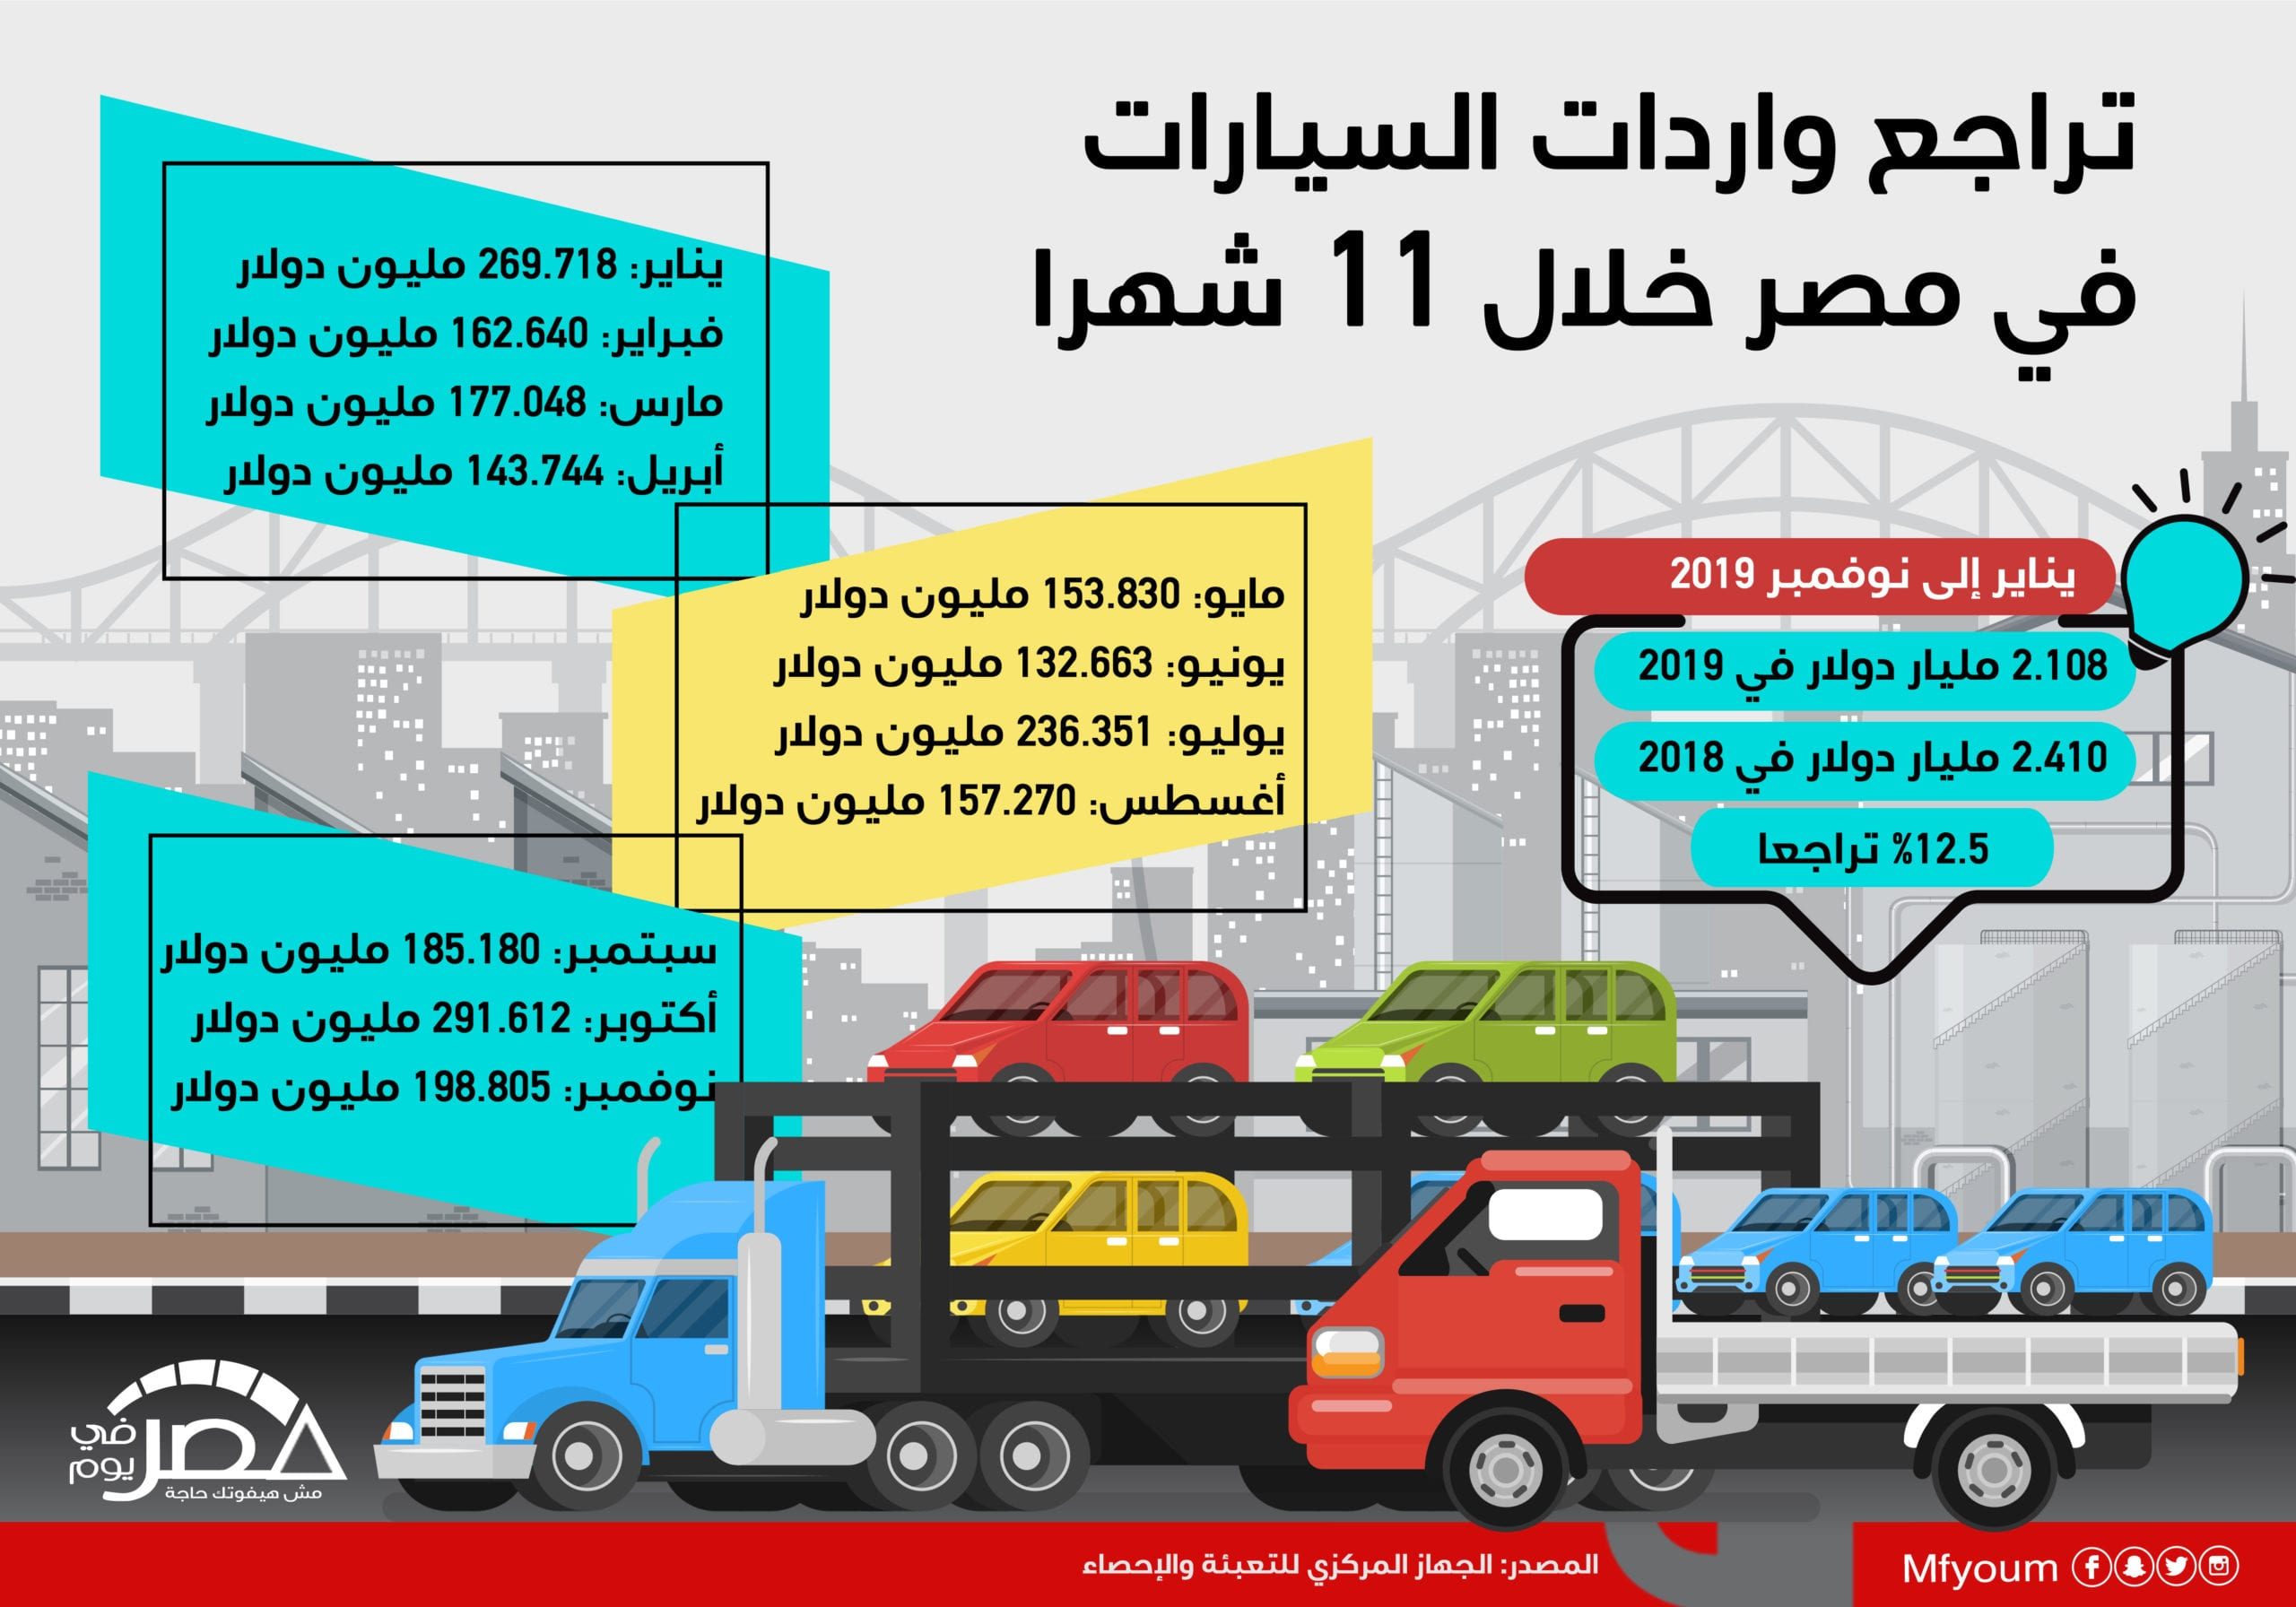 واردات السيارات في مصر